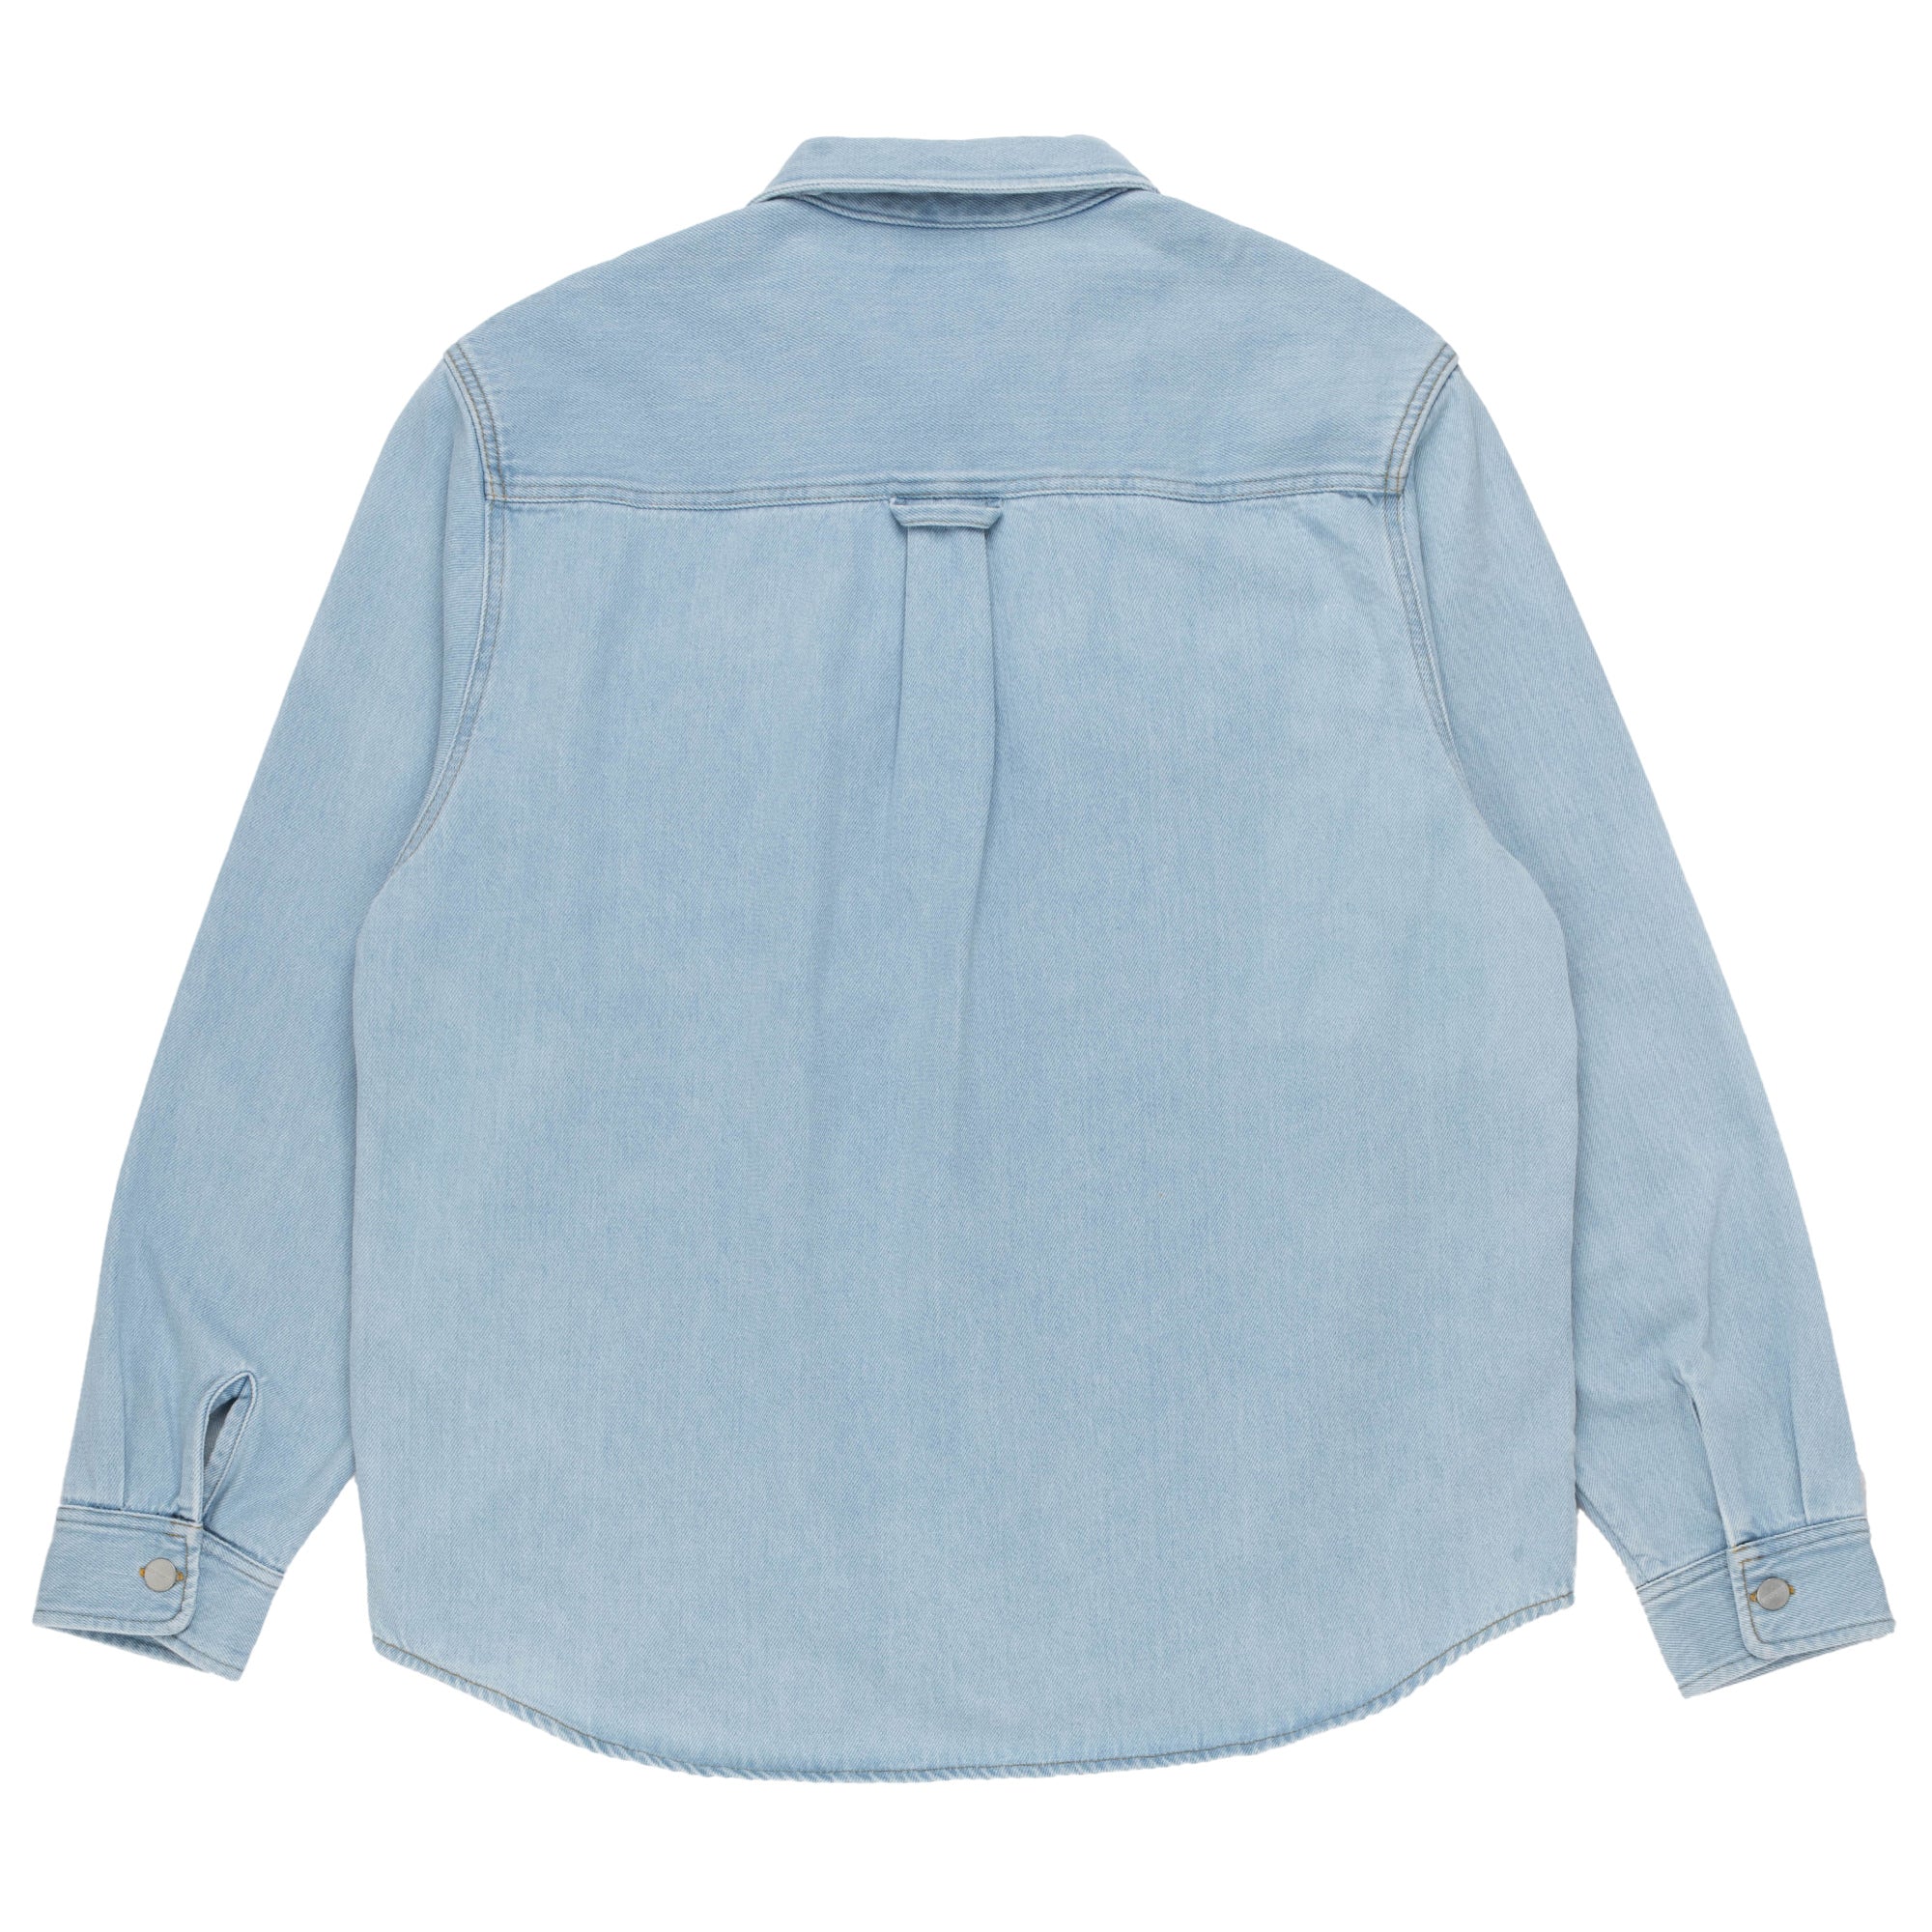 Harvey Shirt Jacket Stone Blue I033346